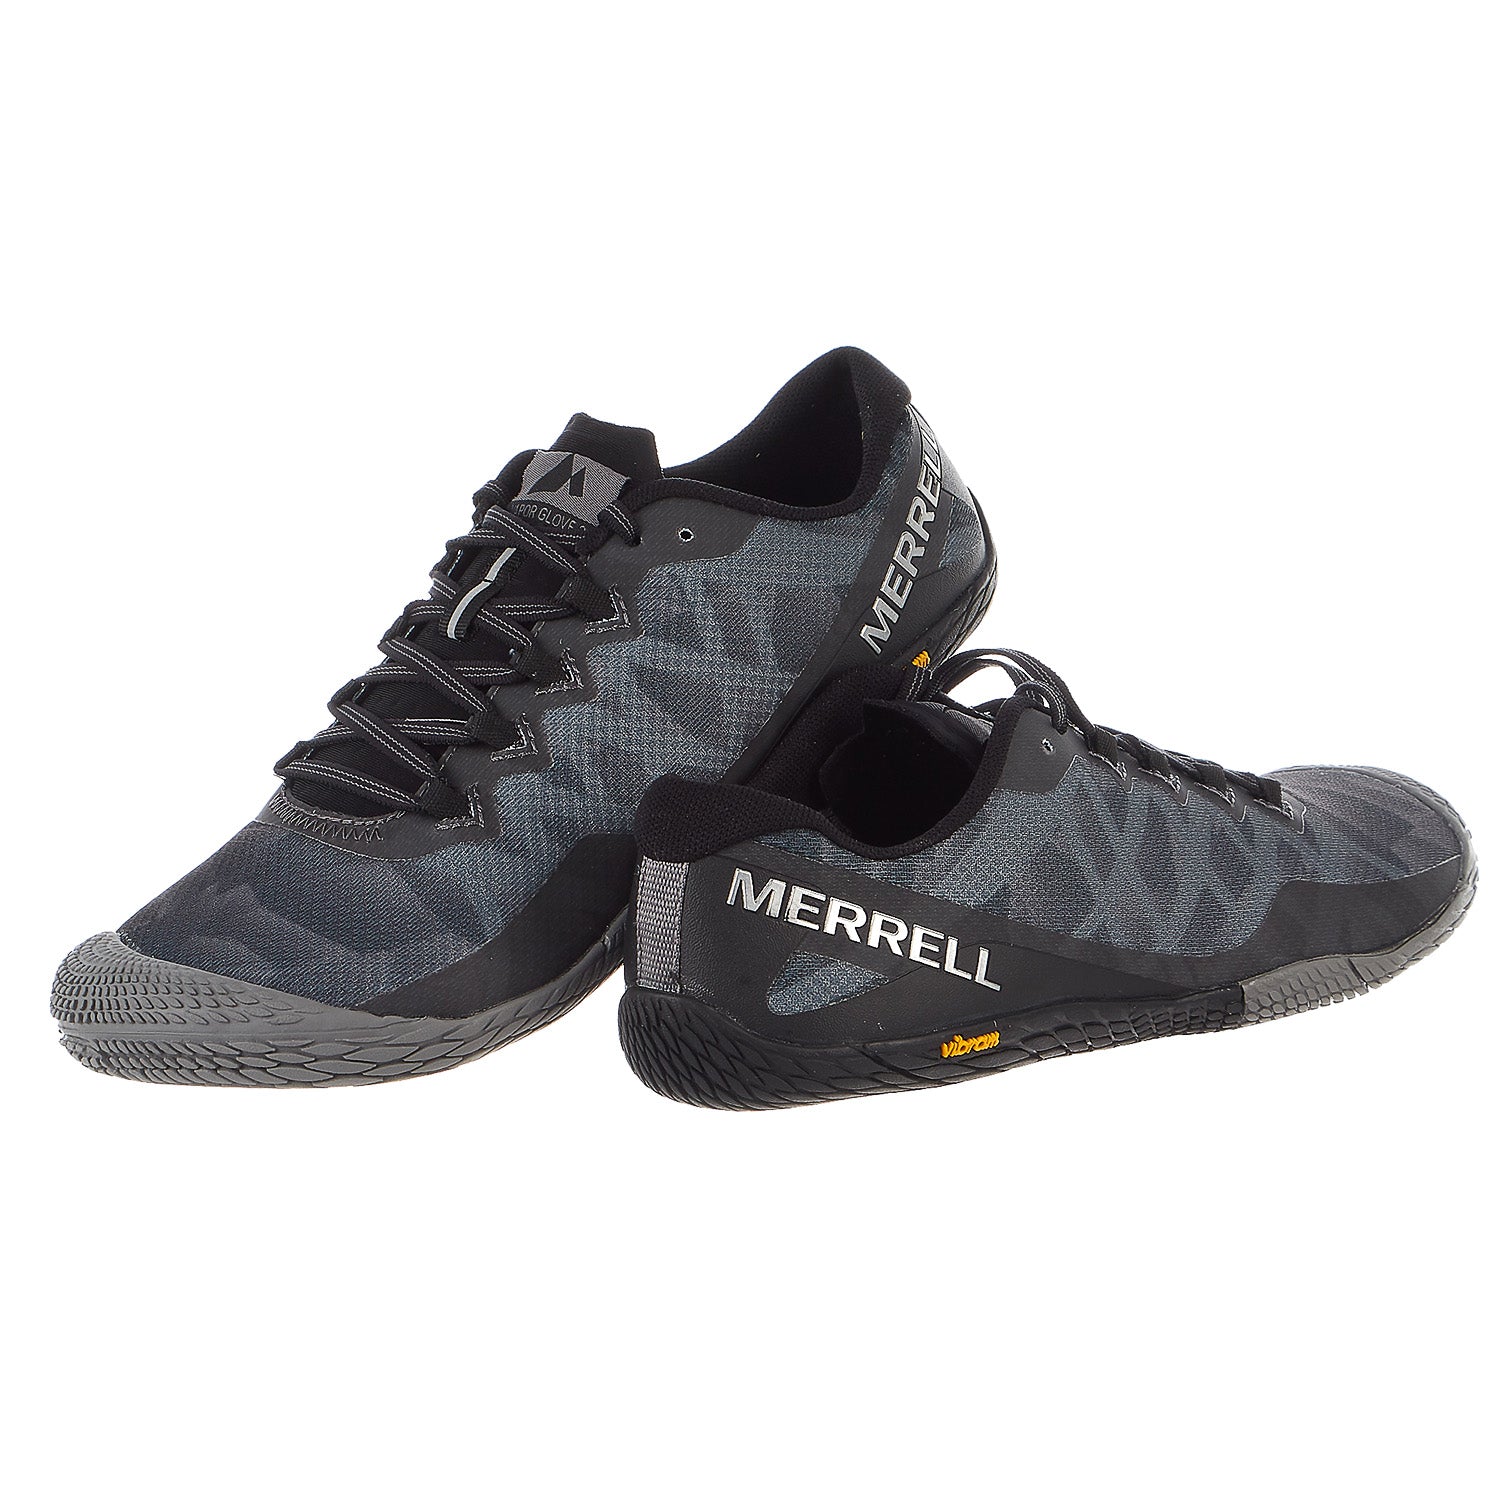  Merrell Men's Vapor Glove 6 Sneaker, Black, 7